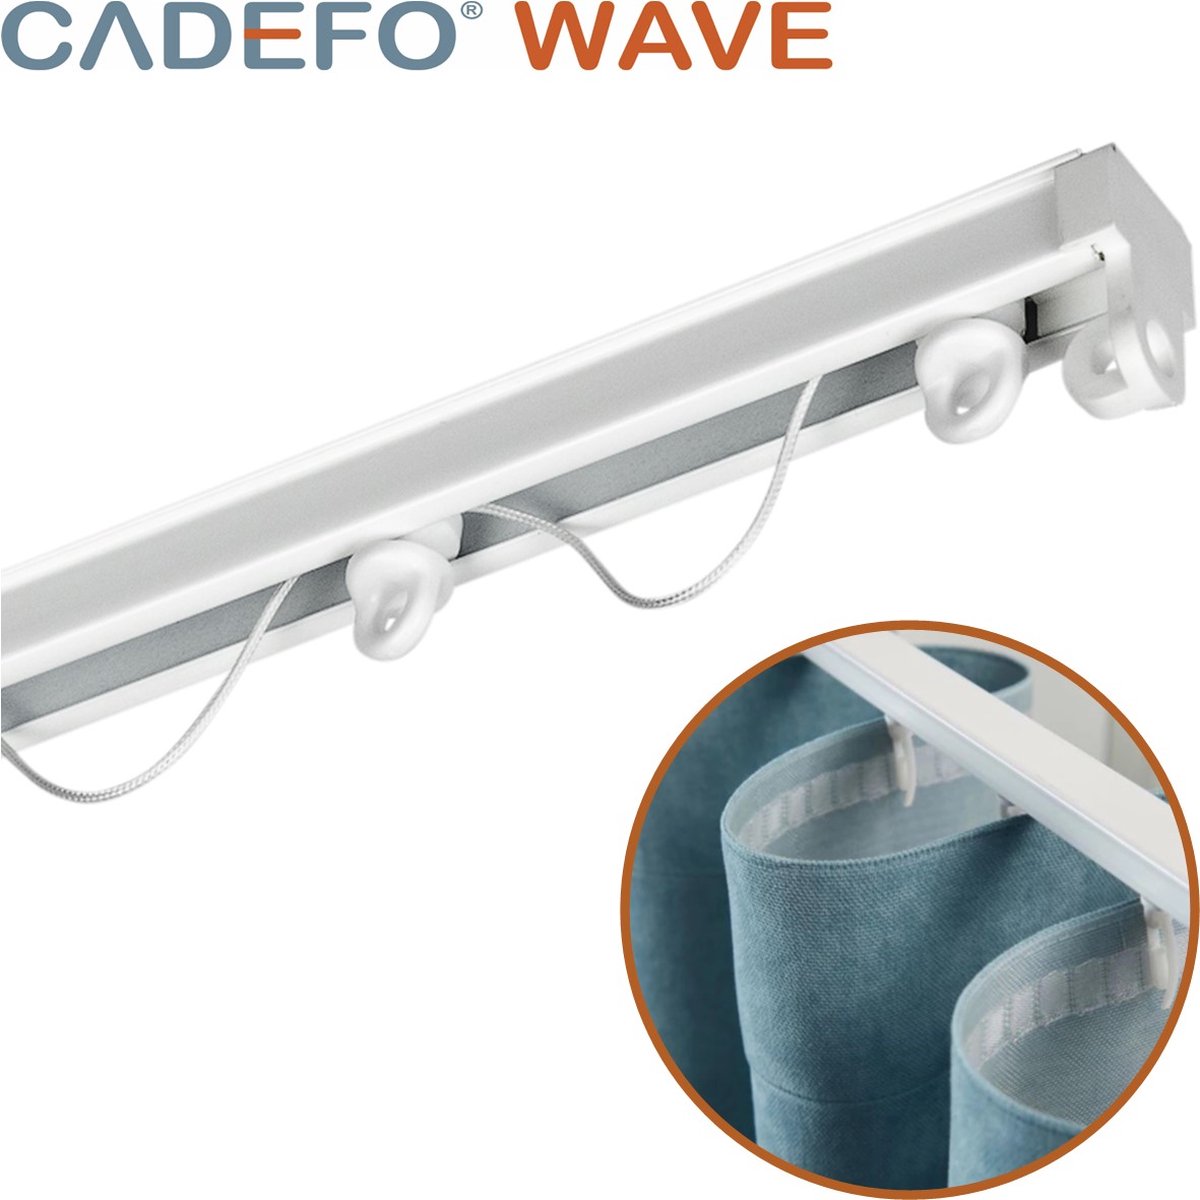 CADEFO WAVE (251 - 300 cm) Gordijnrails - Compleet op maat! - UIT 1 STUK - Leverbaar tot 6 meter - Plafondbevestiging - Lengte 265 cm